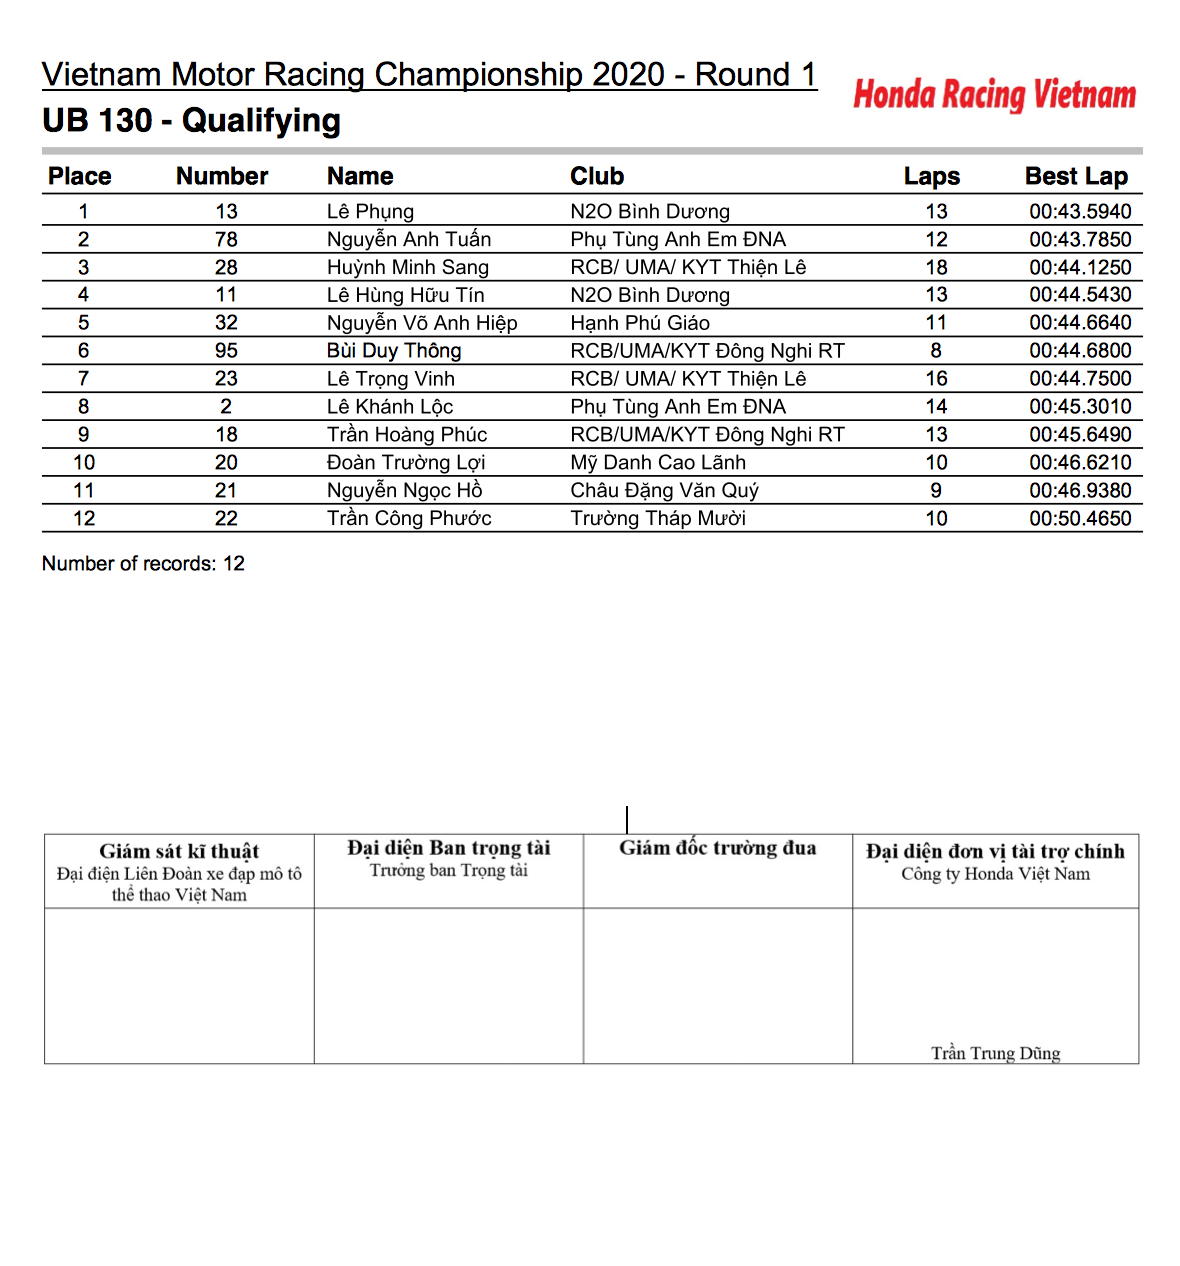 Kết quả đua phân hạng Chặng 1 VMRC 2020 ub130-qualifying.png